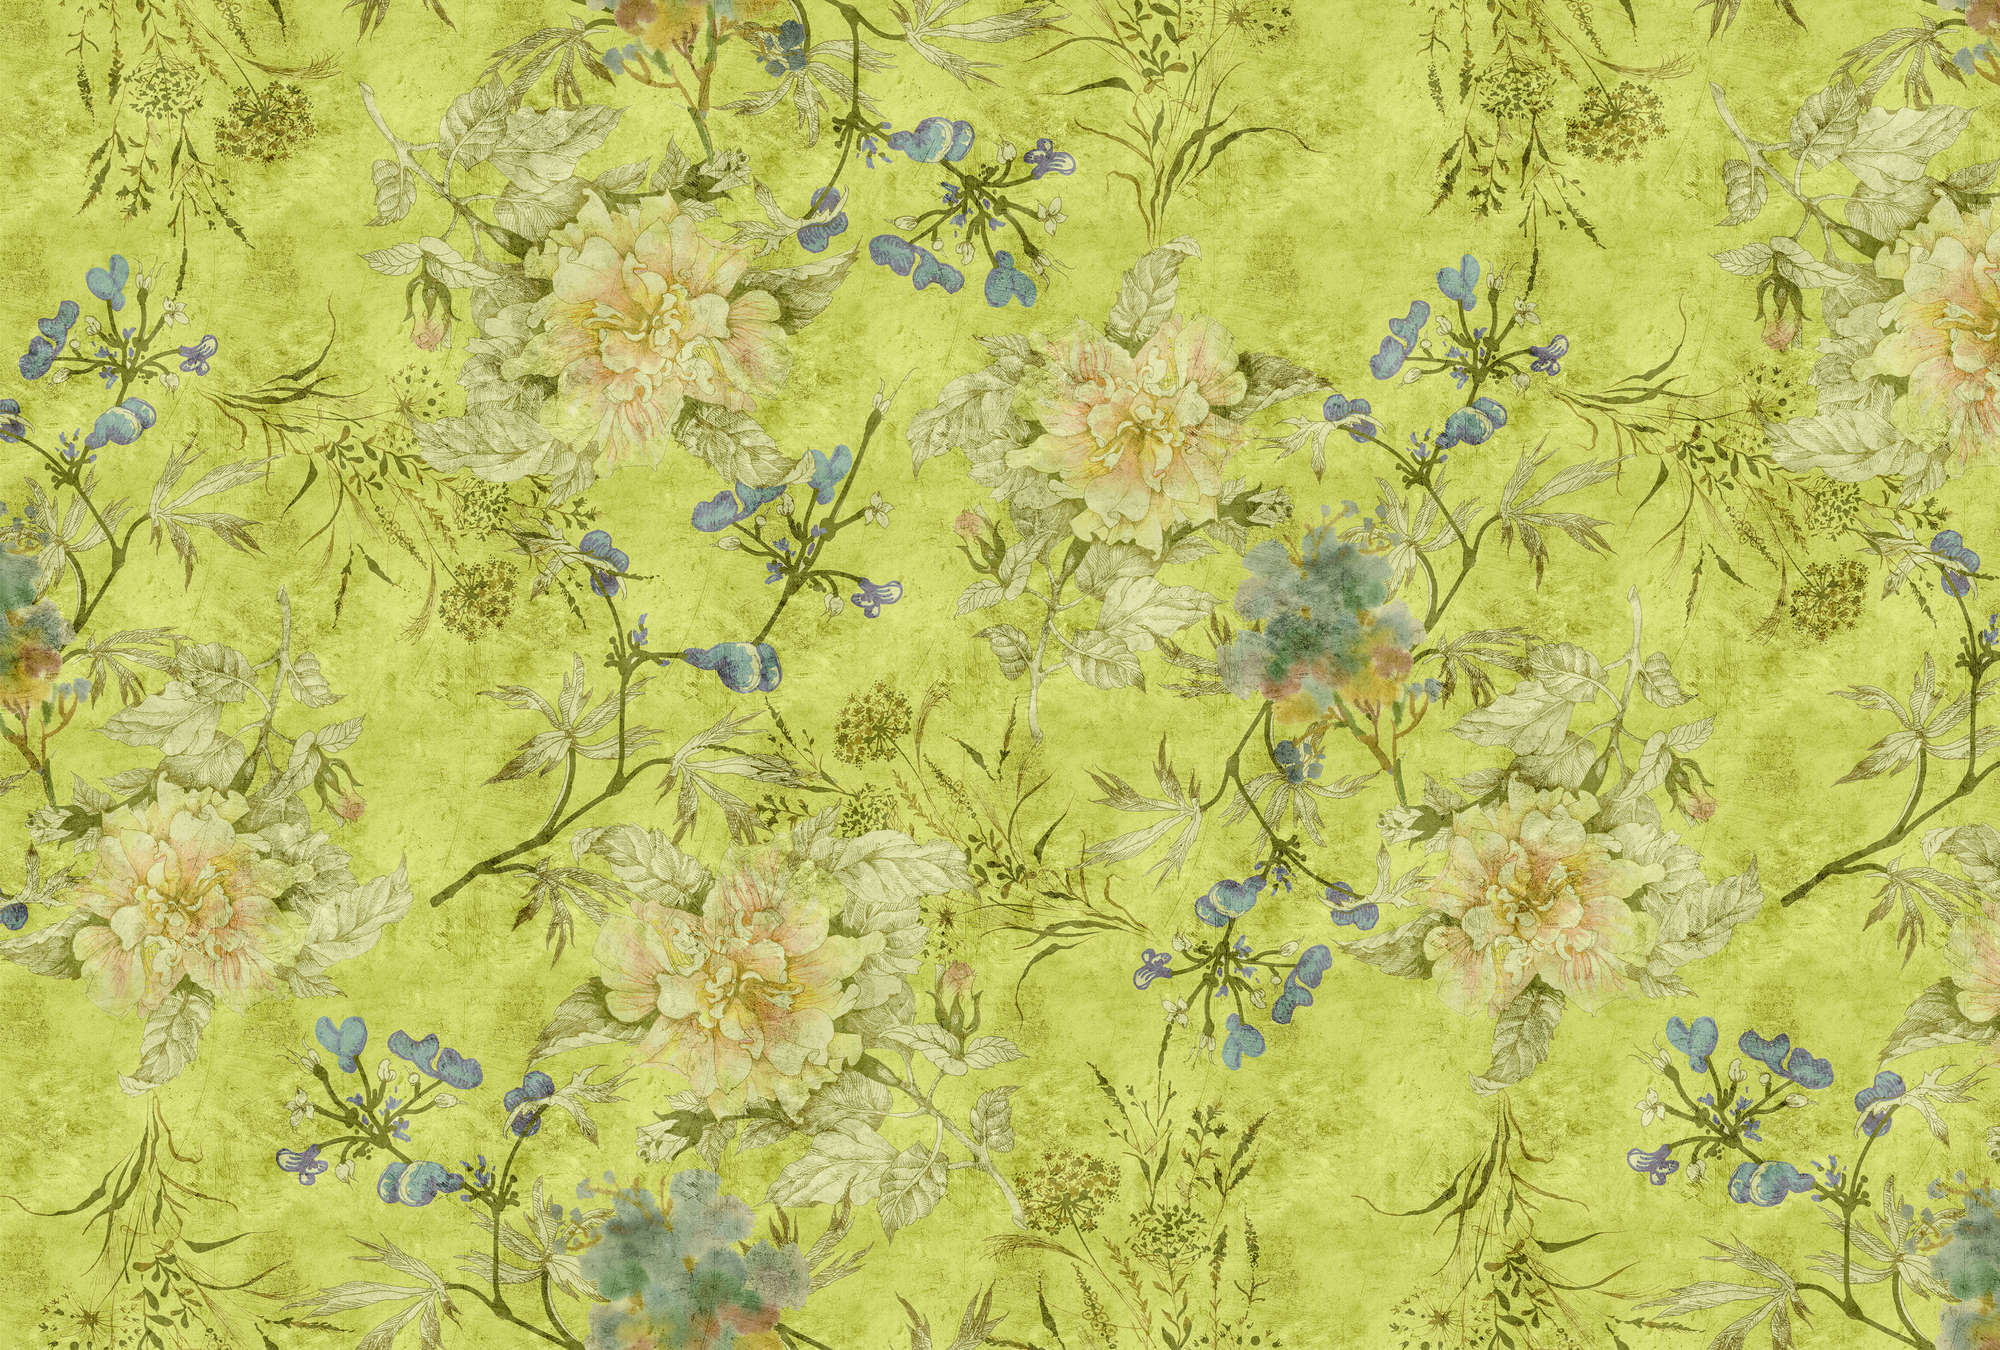             Tenderblossom 1 - Papier peint panoramique avec vrilles de fleurs modernes à texture rayée - vert | Nacré intissé lisse
        